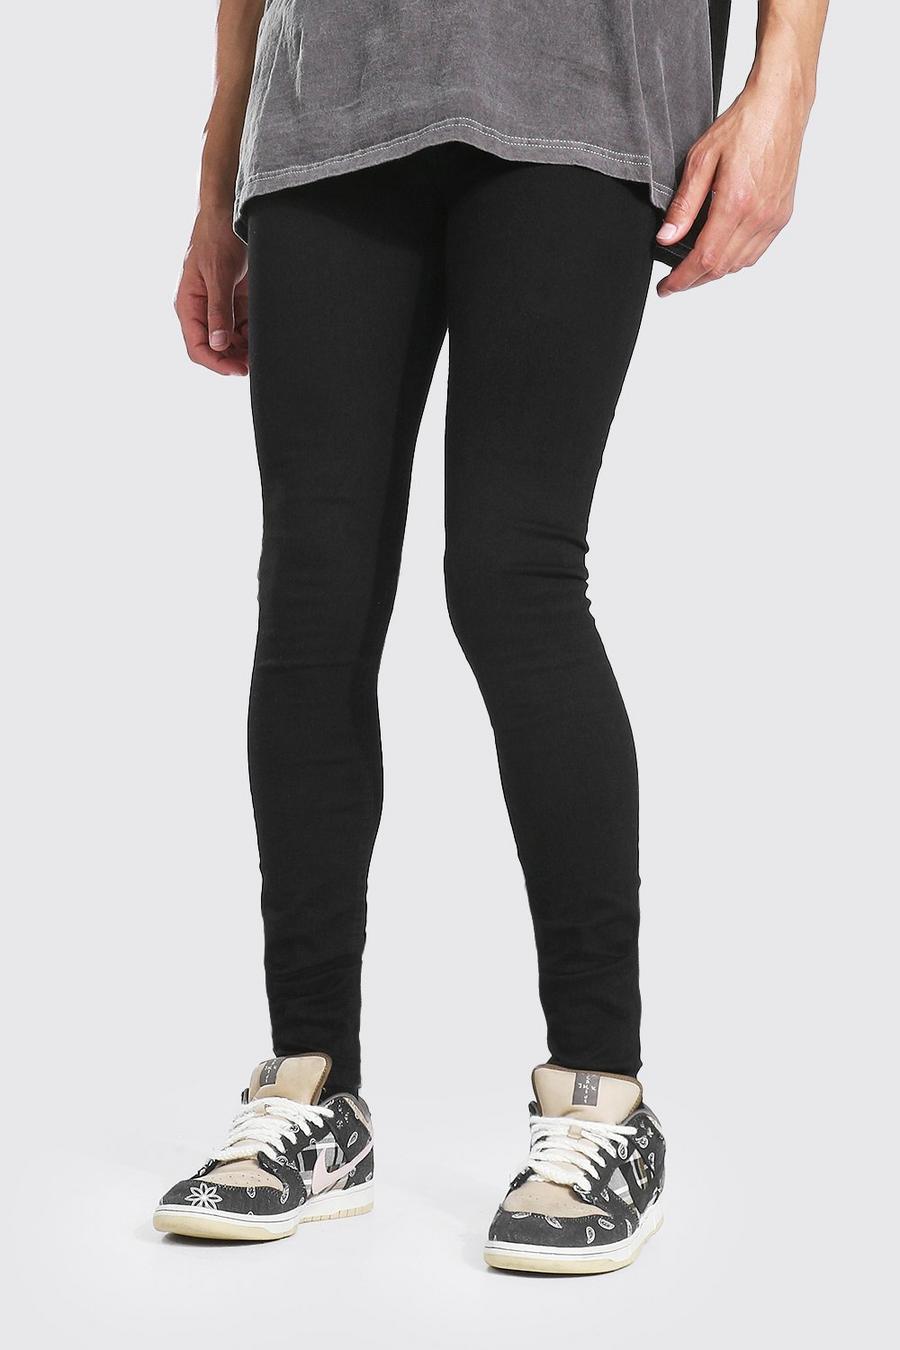 שחור אמיתי מכנסי ג'ינס סופר סקיני לגברים גבוהים image number 1